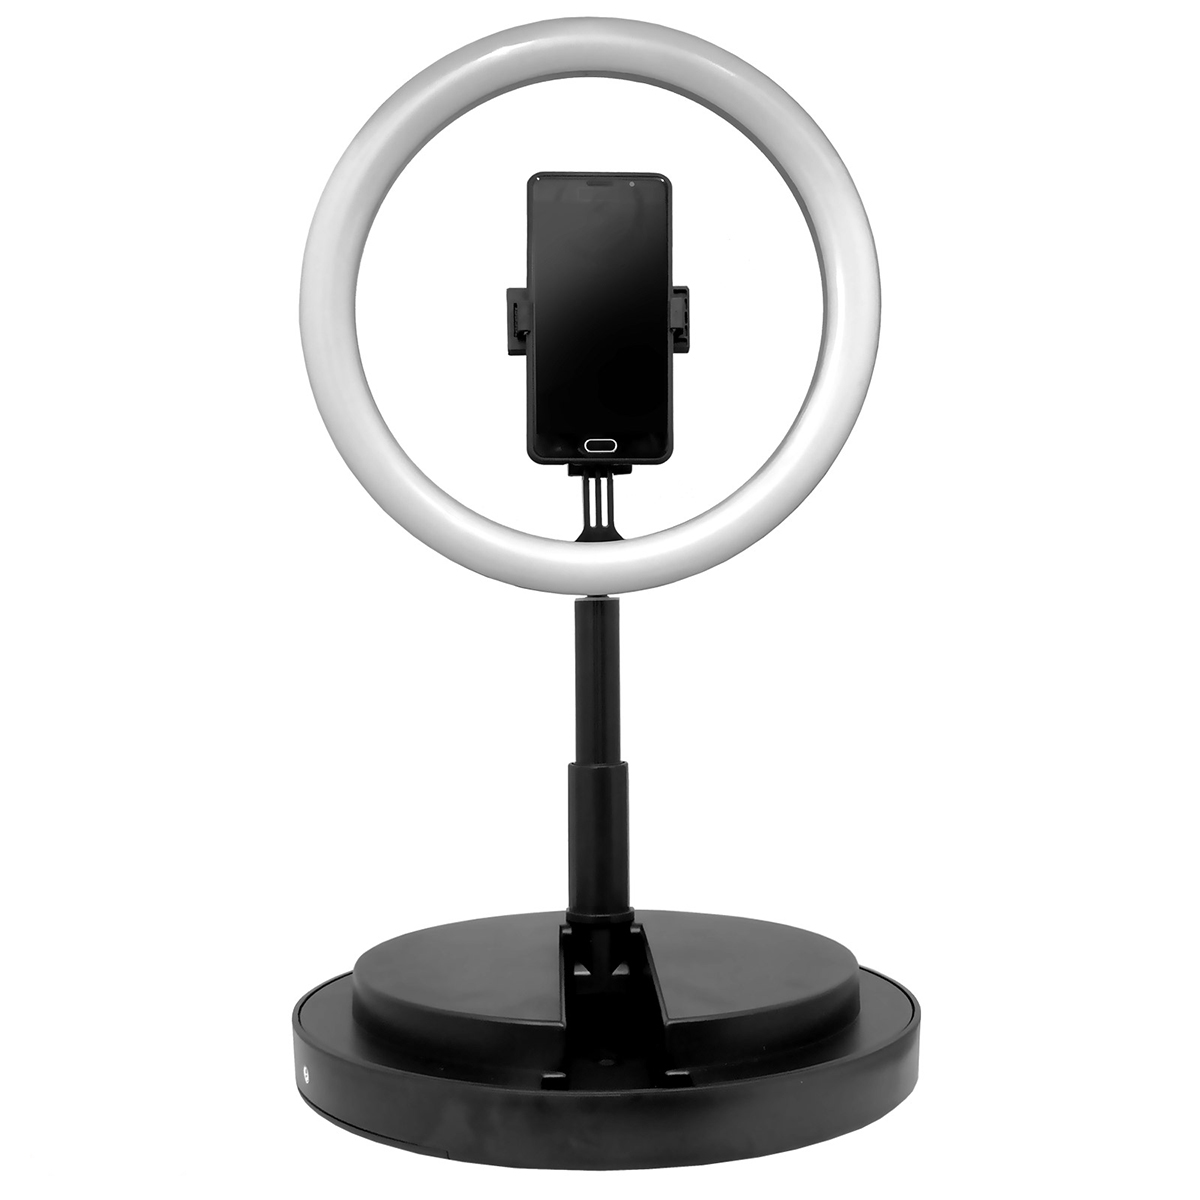 Кольцевая светодиодная лампа LBL - 29 см, 40 Вт, на круглой стойке штативе 35-165 см, с держателем для телефона. Селфи кольцо для визажиста. LED Ring Light Live Beauty Light.